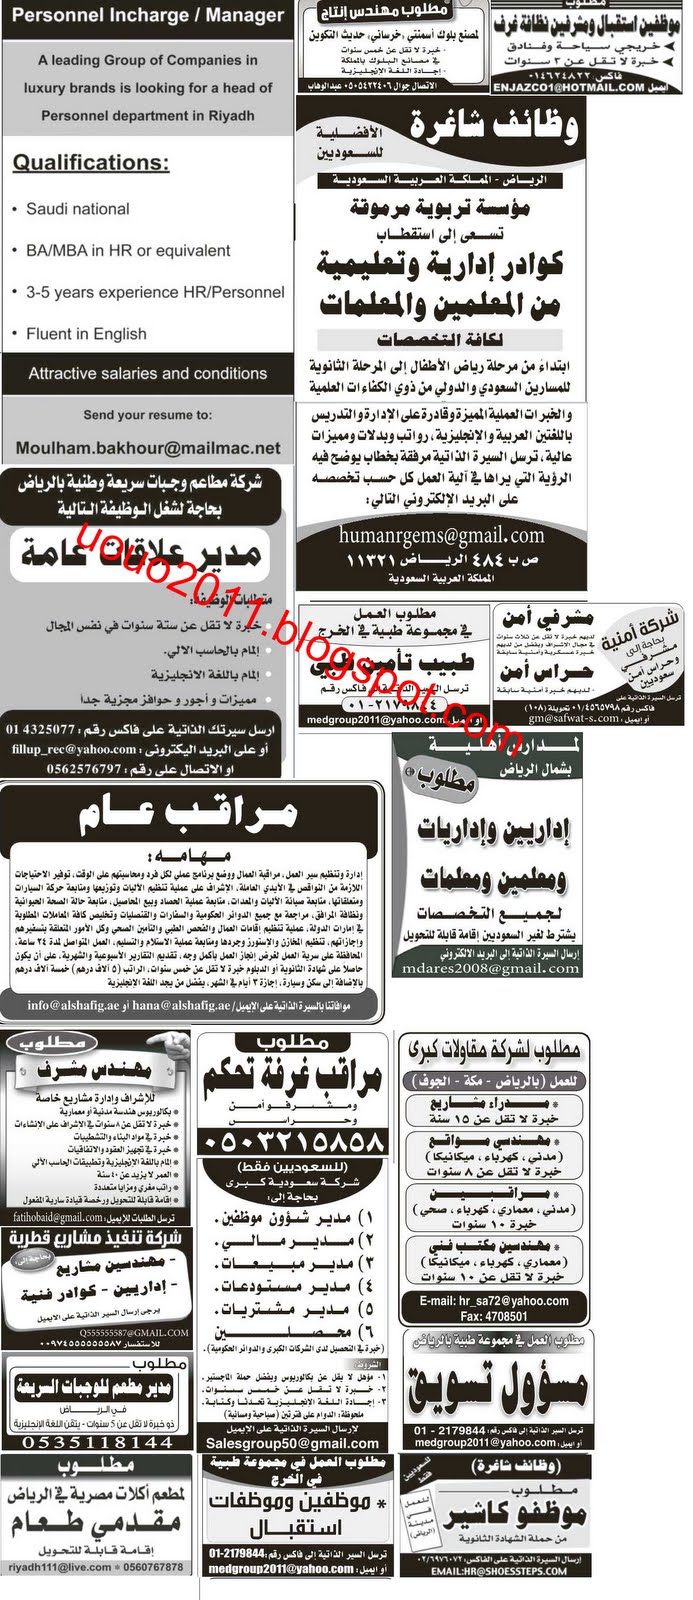 وظائف السعودية - وظائف جريدة الرياض الاثنين 9 مايو 2011 1